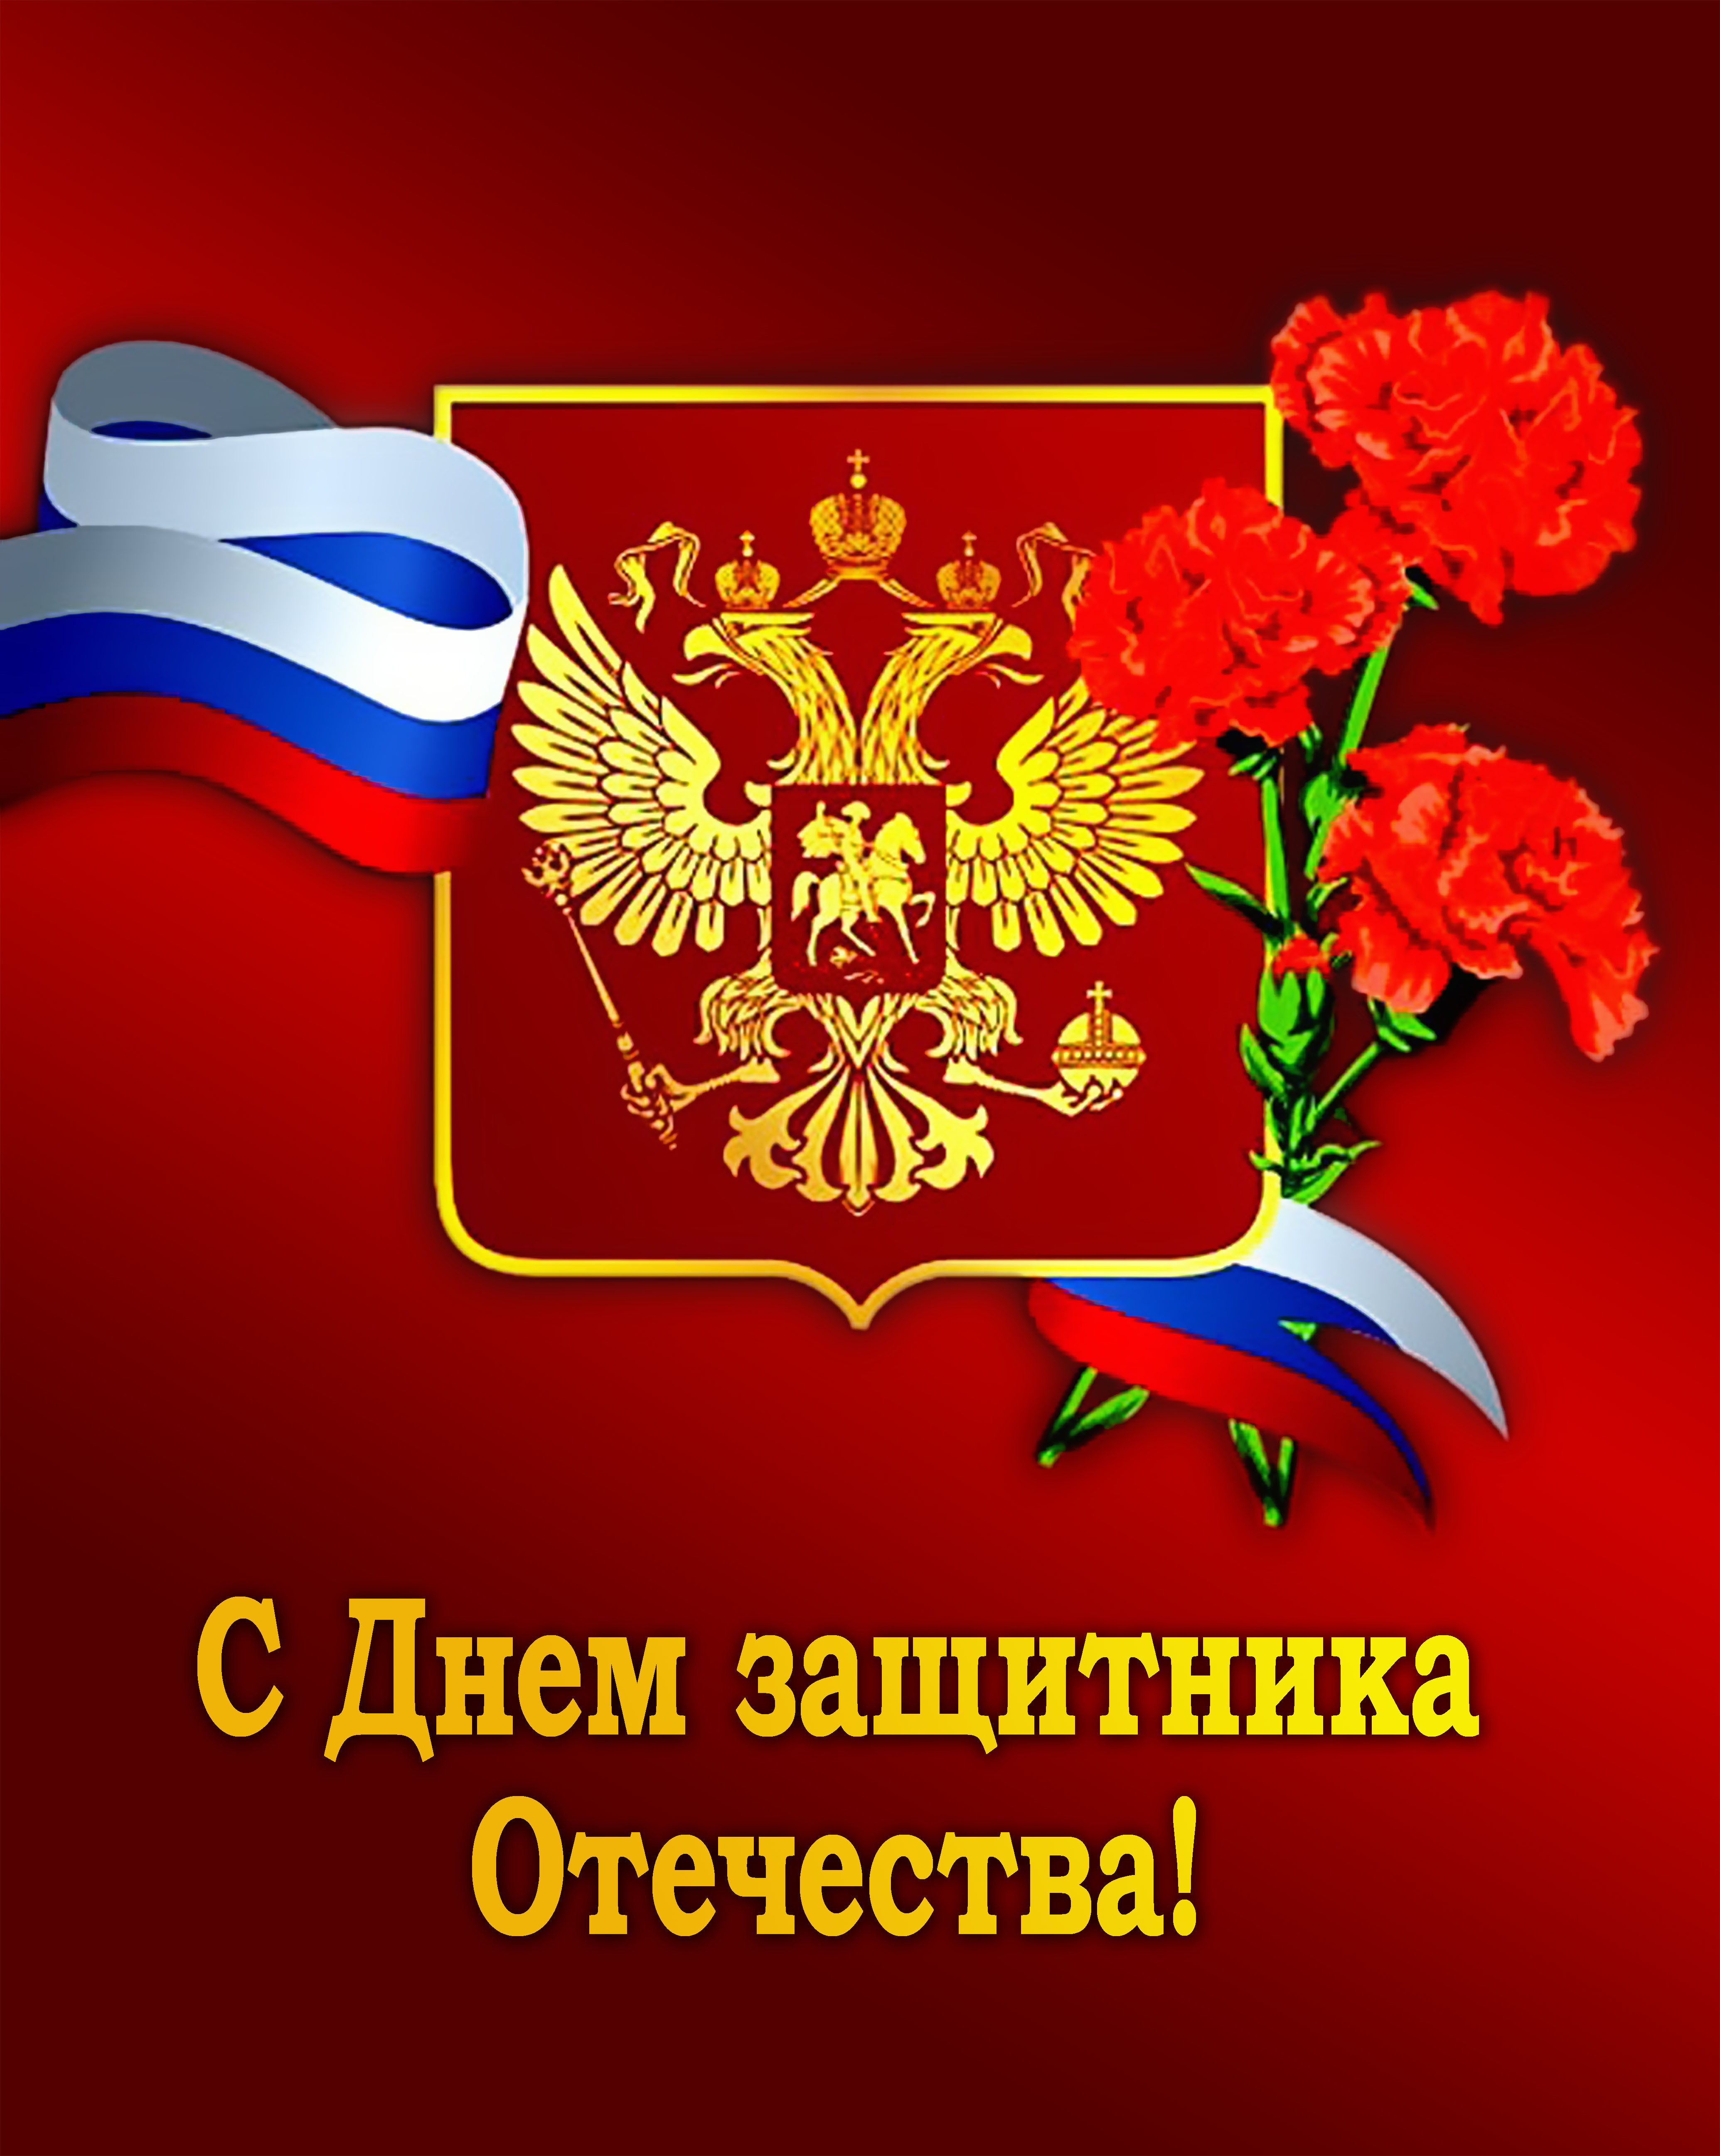 Михаил Клименко поздравляет с Днём защитника Отечества!